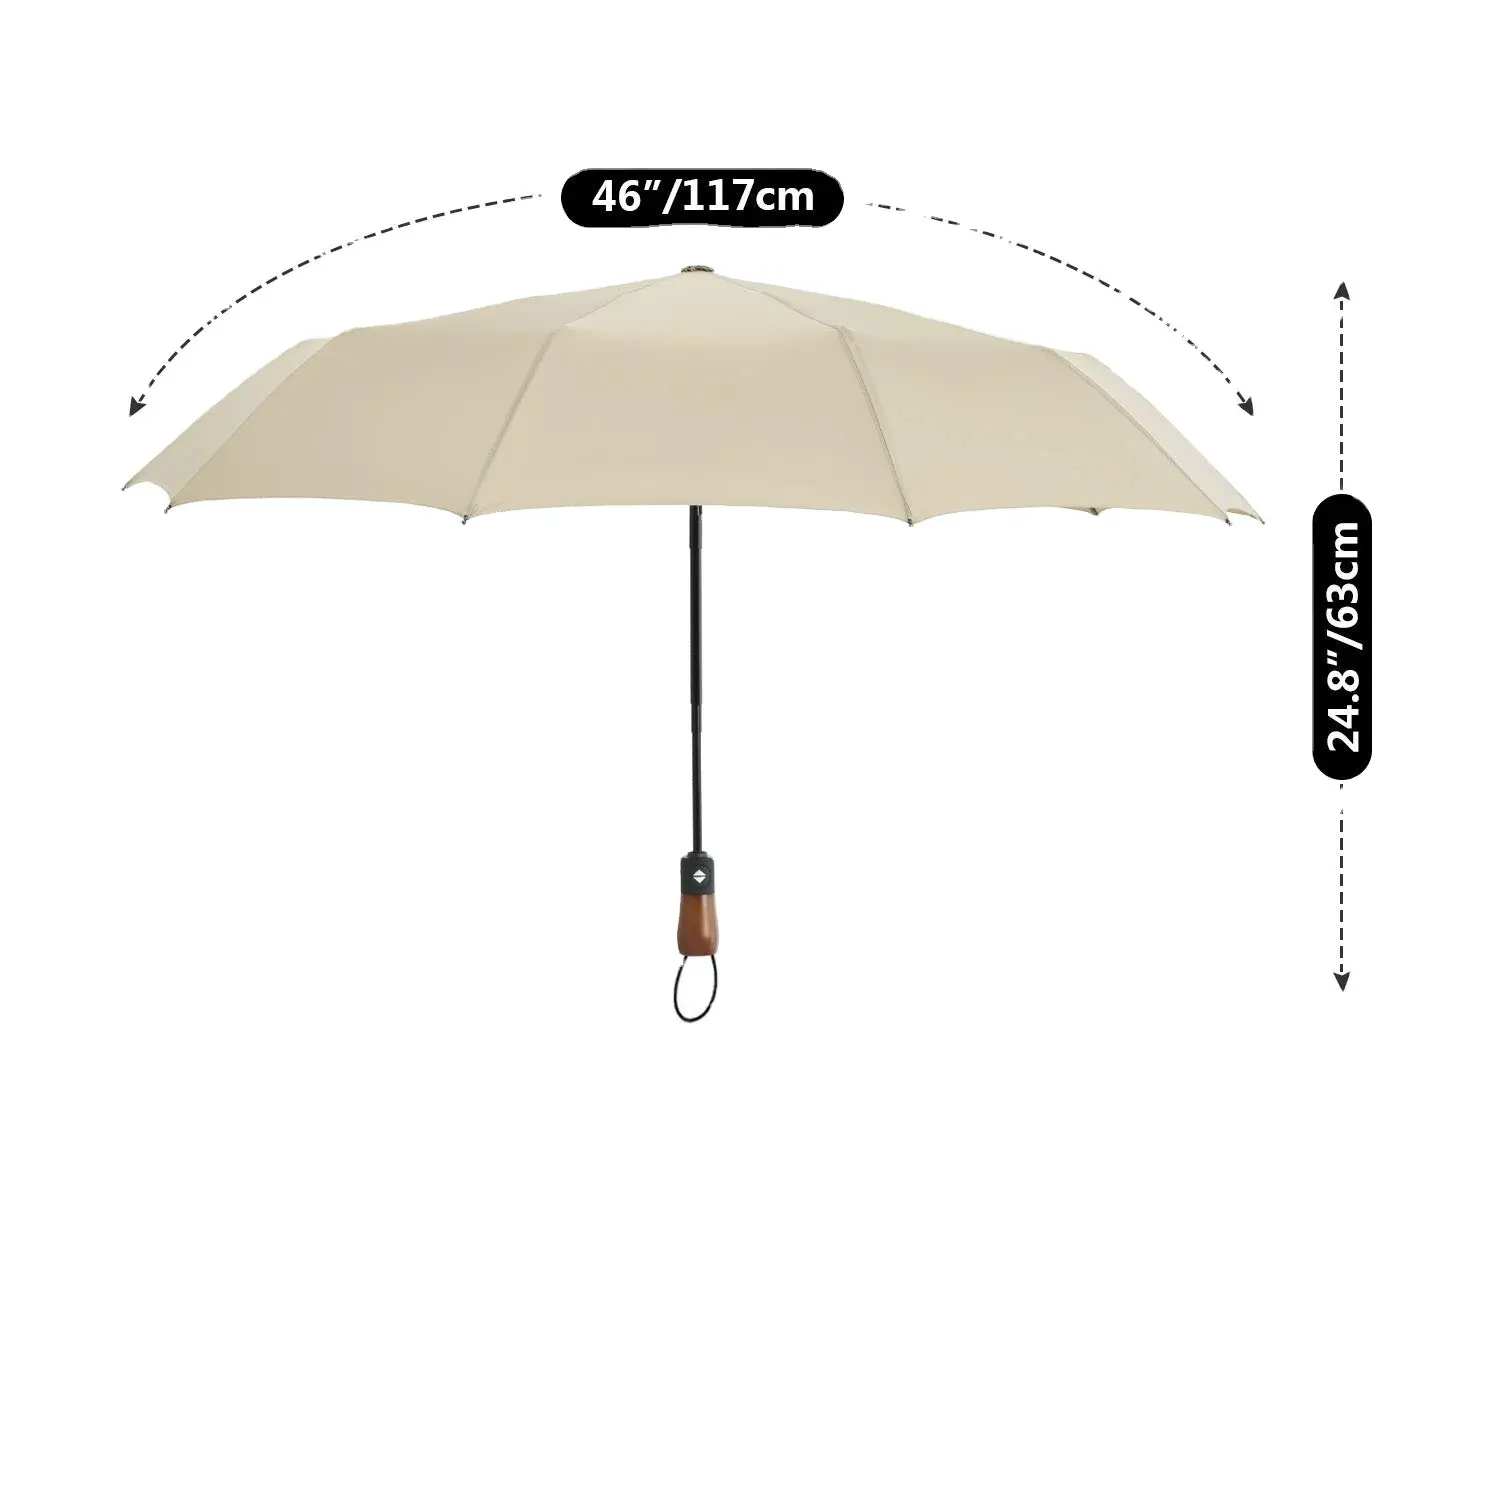 All'ingrosso personalizzato Mini ombrello manuale capsula protezione Uv signora piccolo ombrello pieghevole sole e pioggia